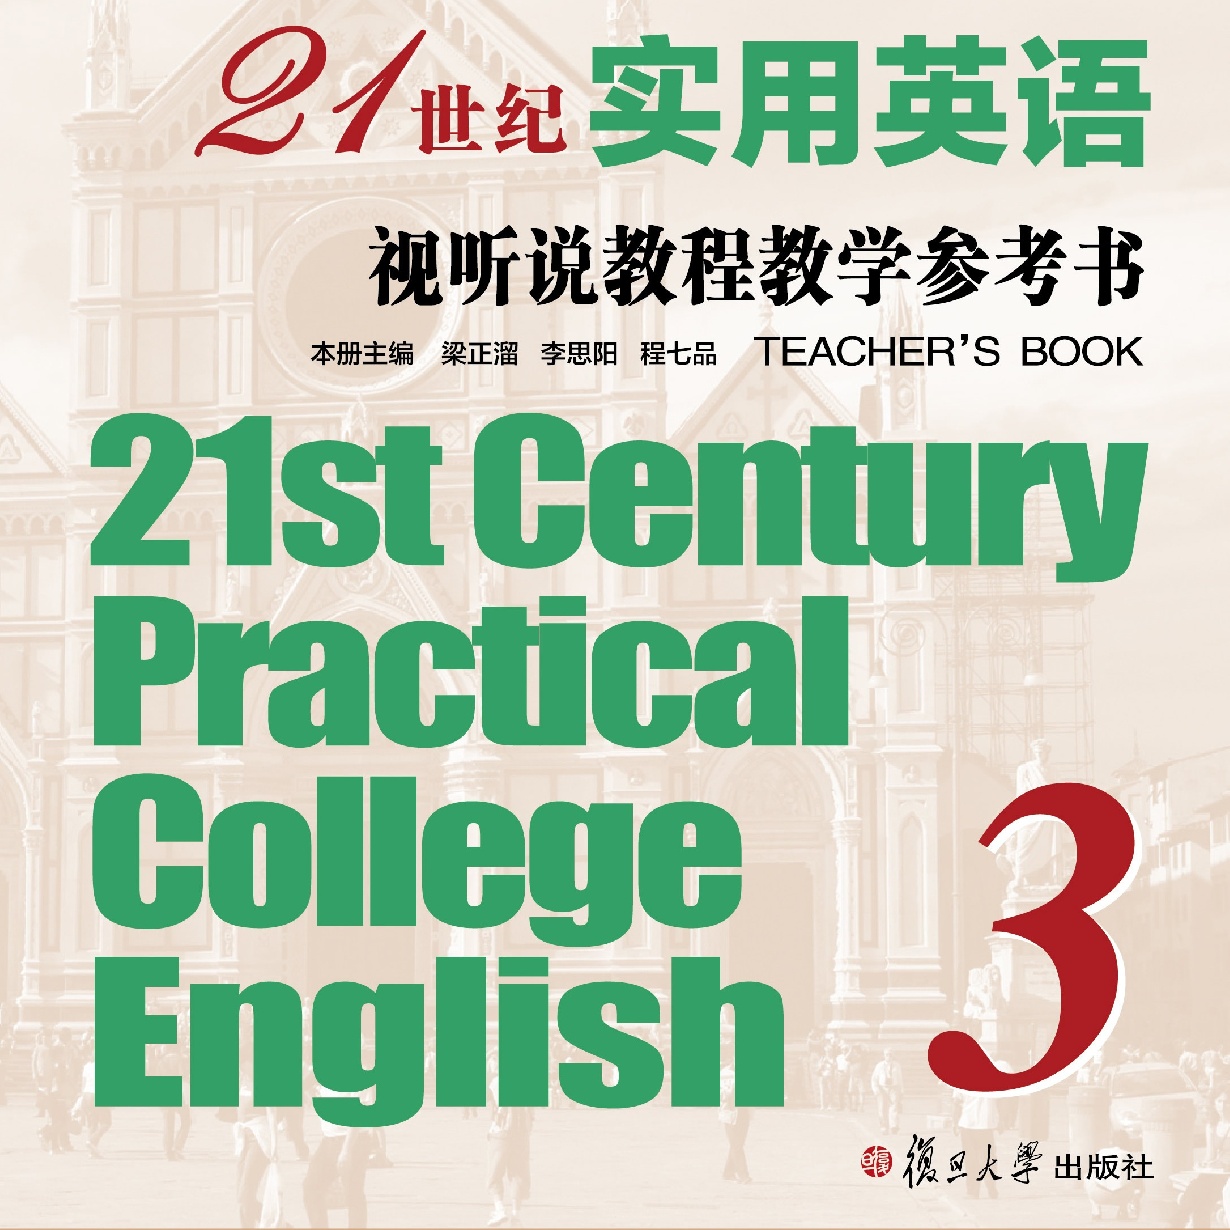 21世纪实用英语视听说教程教学参考书3